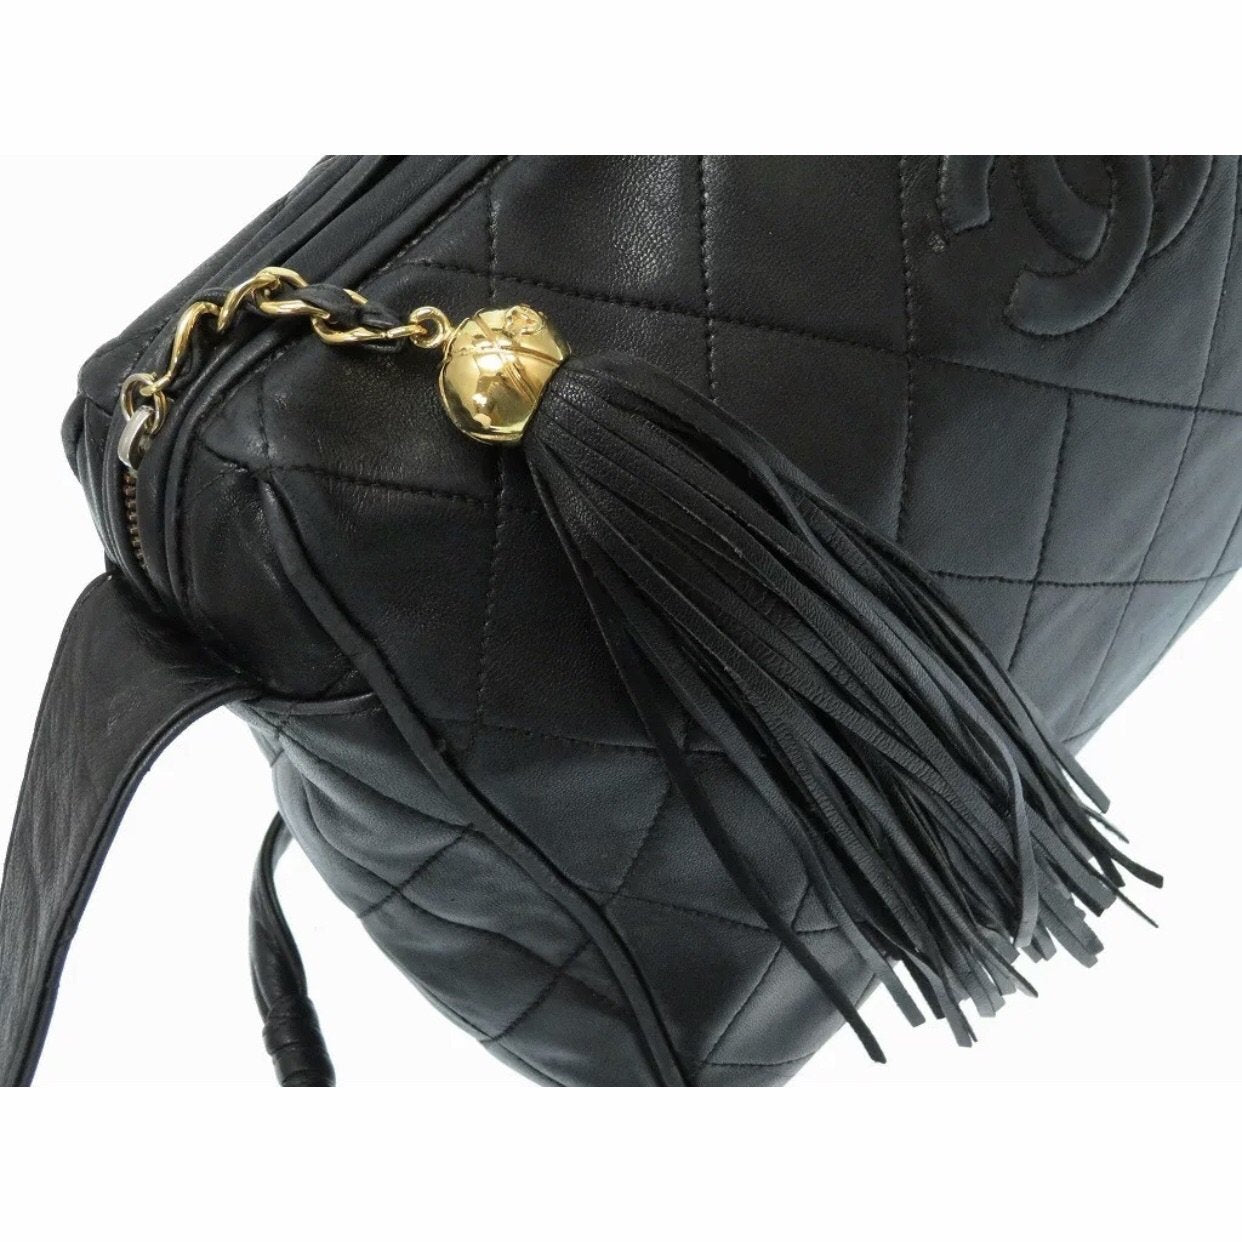 Chanel Vintage CC Tassel Shoulder Bag